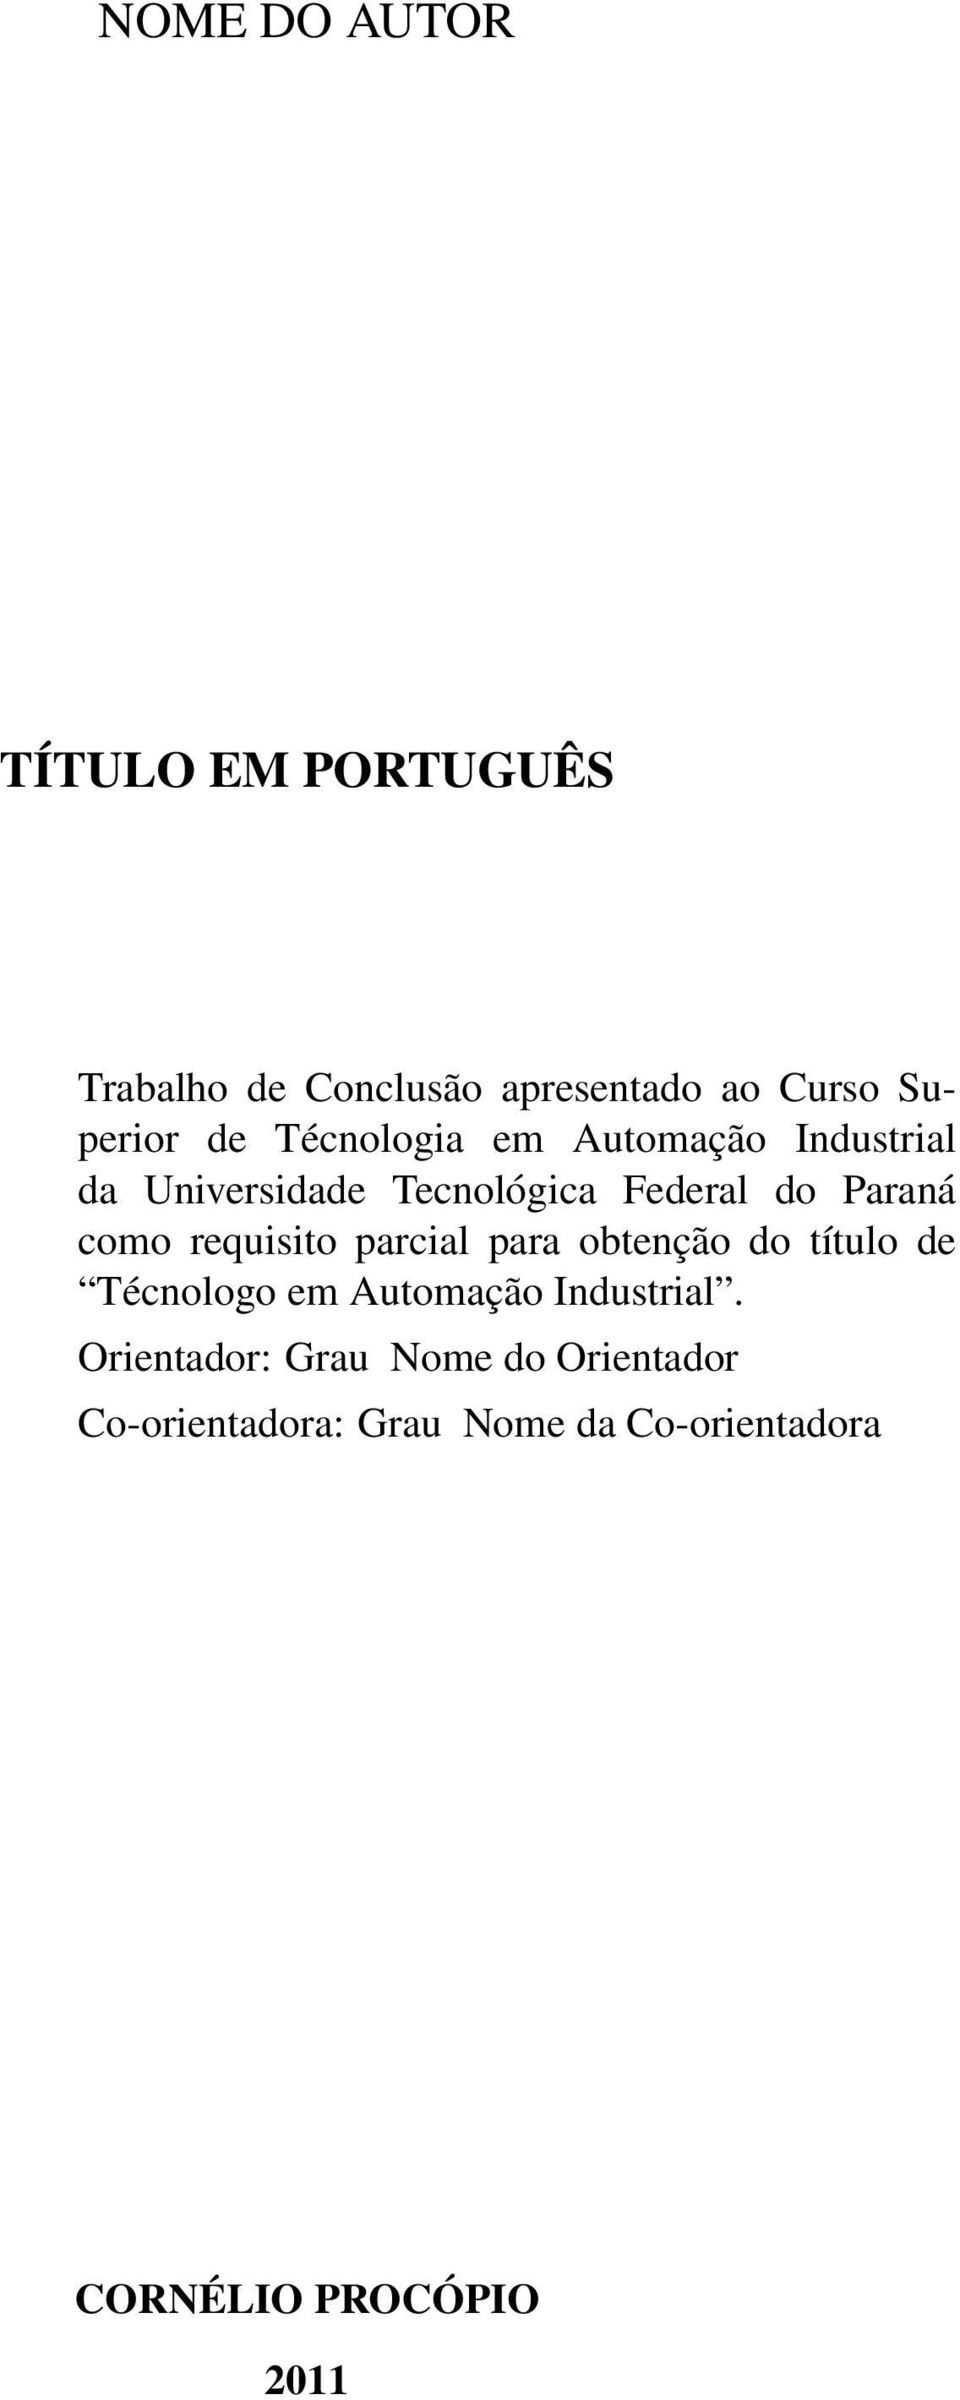 requisito parcial para obtenção do título de Técnologo em Automação Industrial.